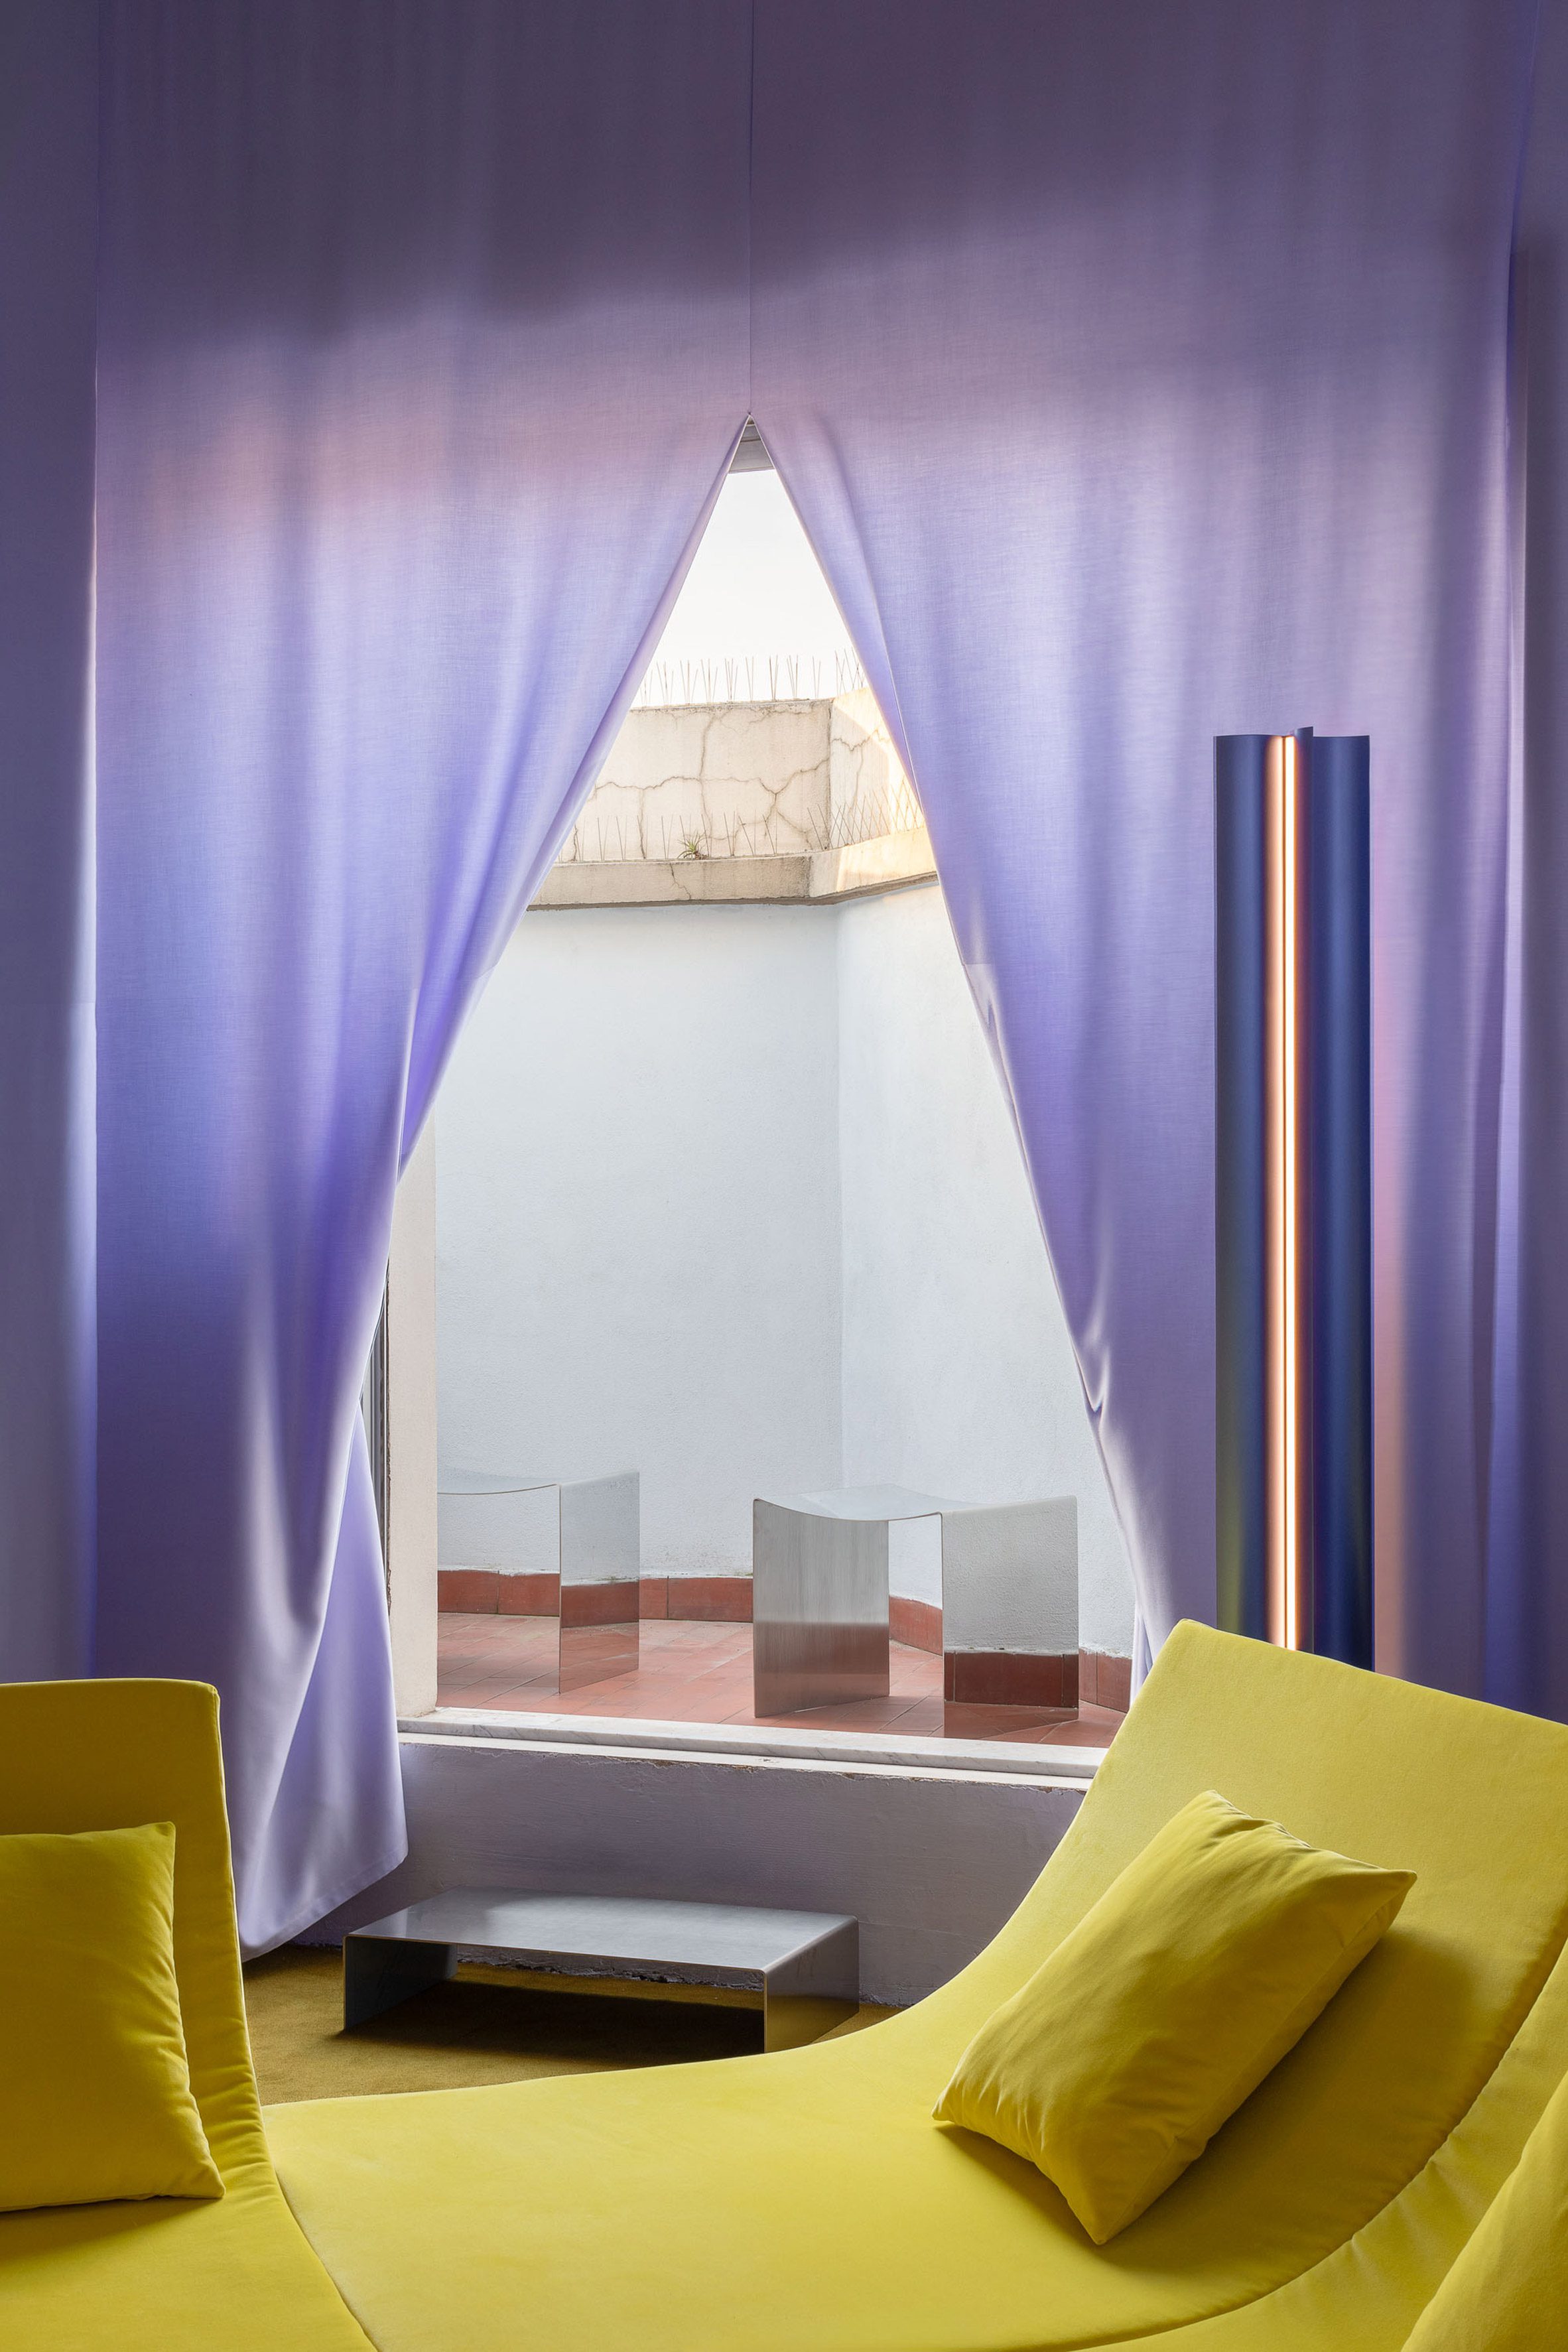 内裤&amp；Tourron和Davide Rapp在米兰打造“地下酒吧式秘密休息室”|ART-Arrakis | 建筑室内设计的创新与灵感